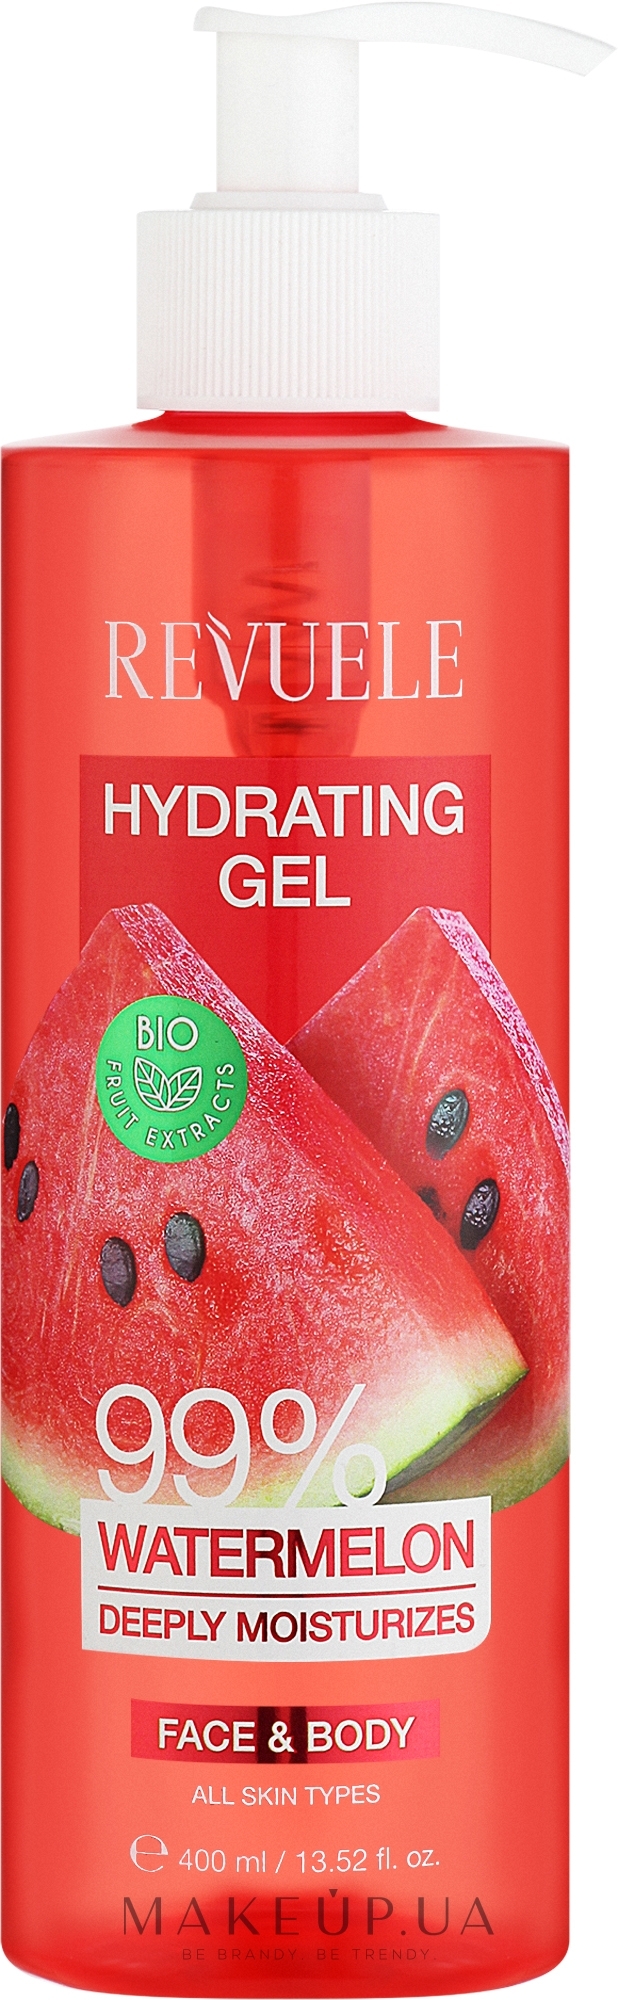 Зволожувальний гель для обличчя й тіла "Кавун" - Revuele Moisturizing Gel 99% Watermelon — фото 400ml